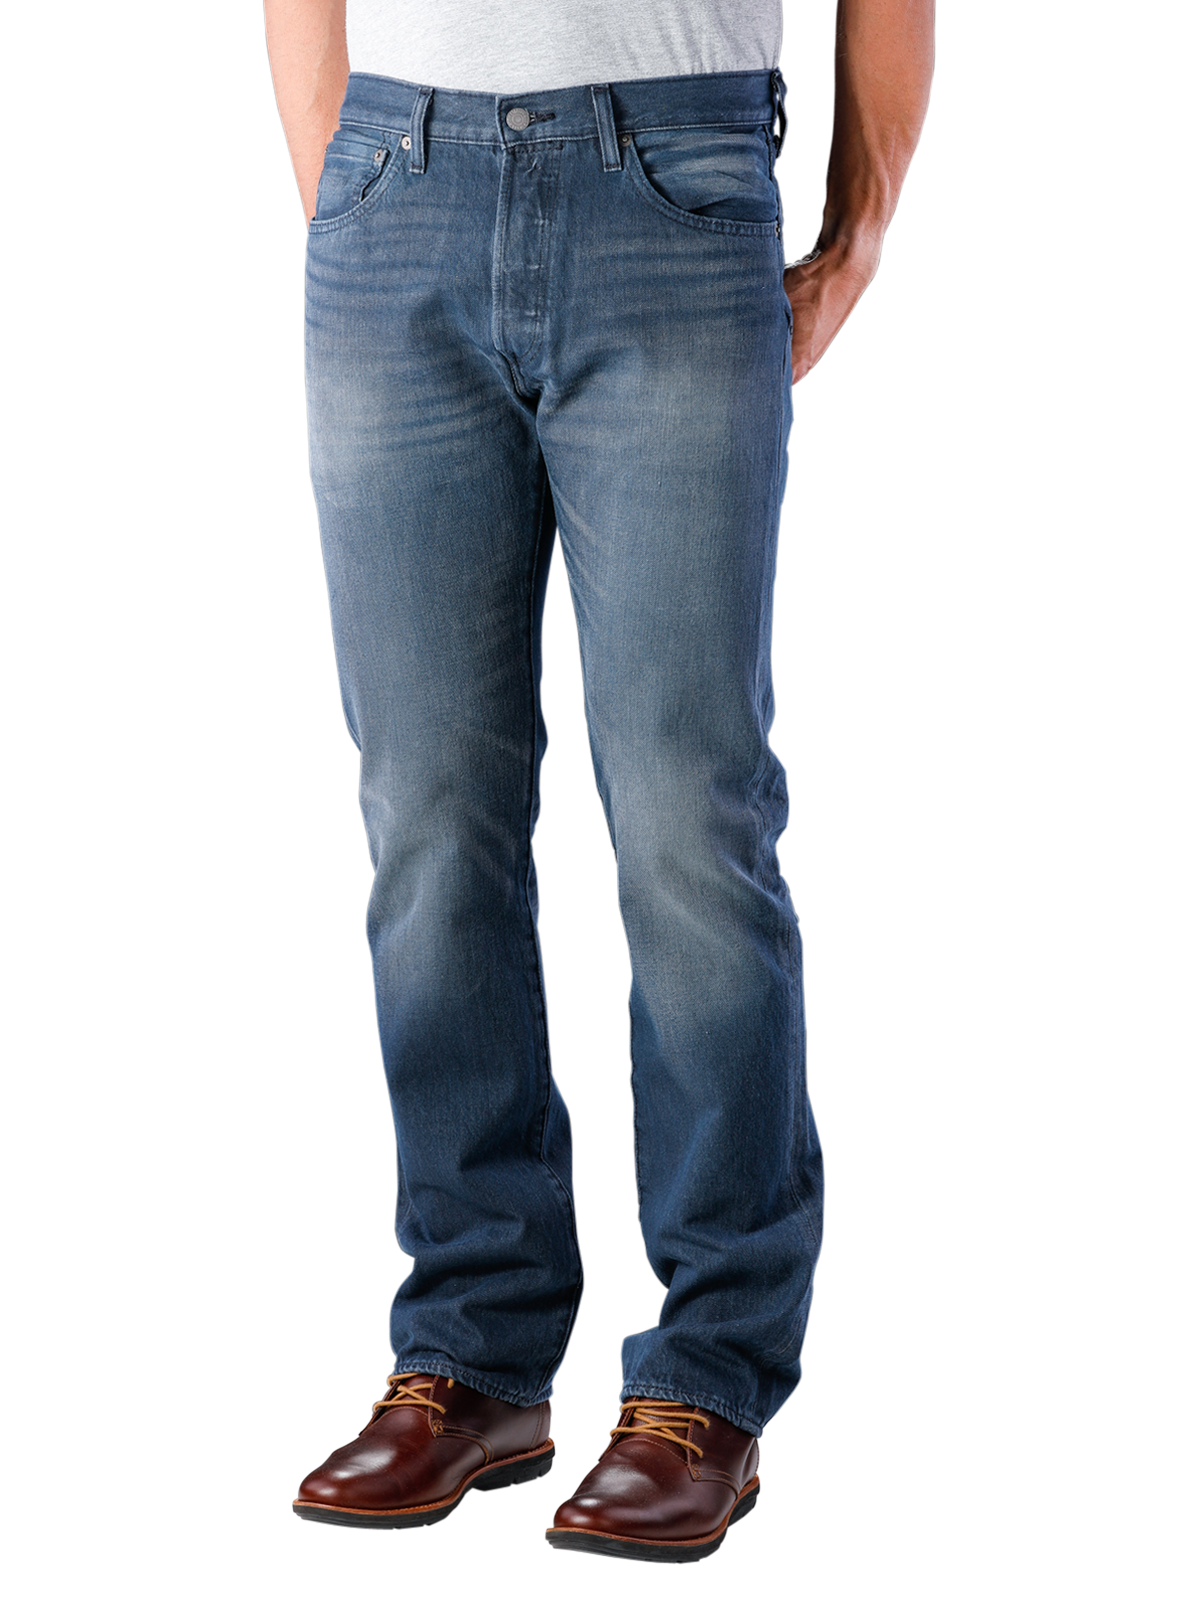 Levi‘s 501 Jeans Original Fit space money | Gratis ... - Levi Strauss 501 Jeans